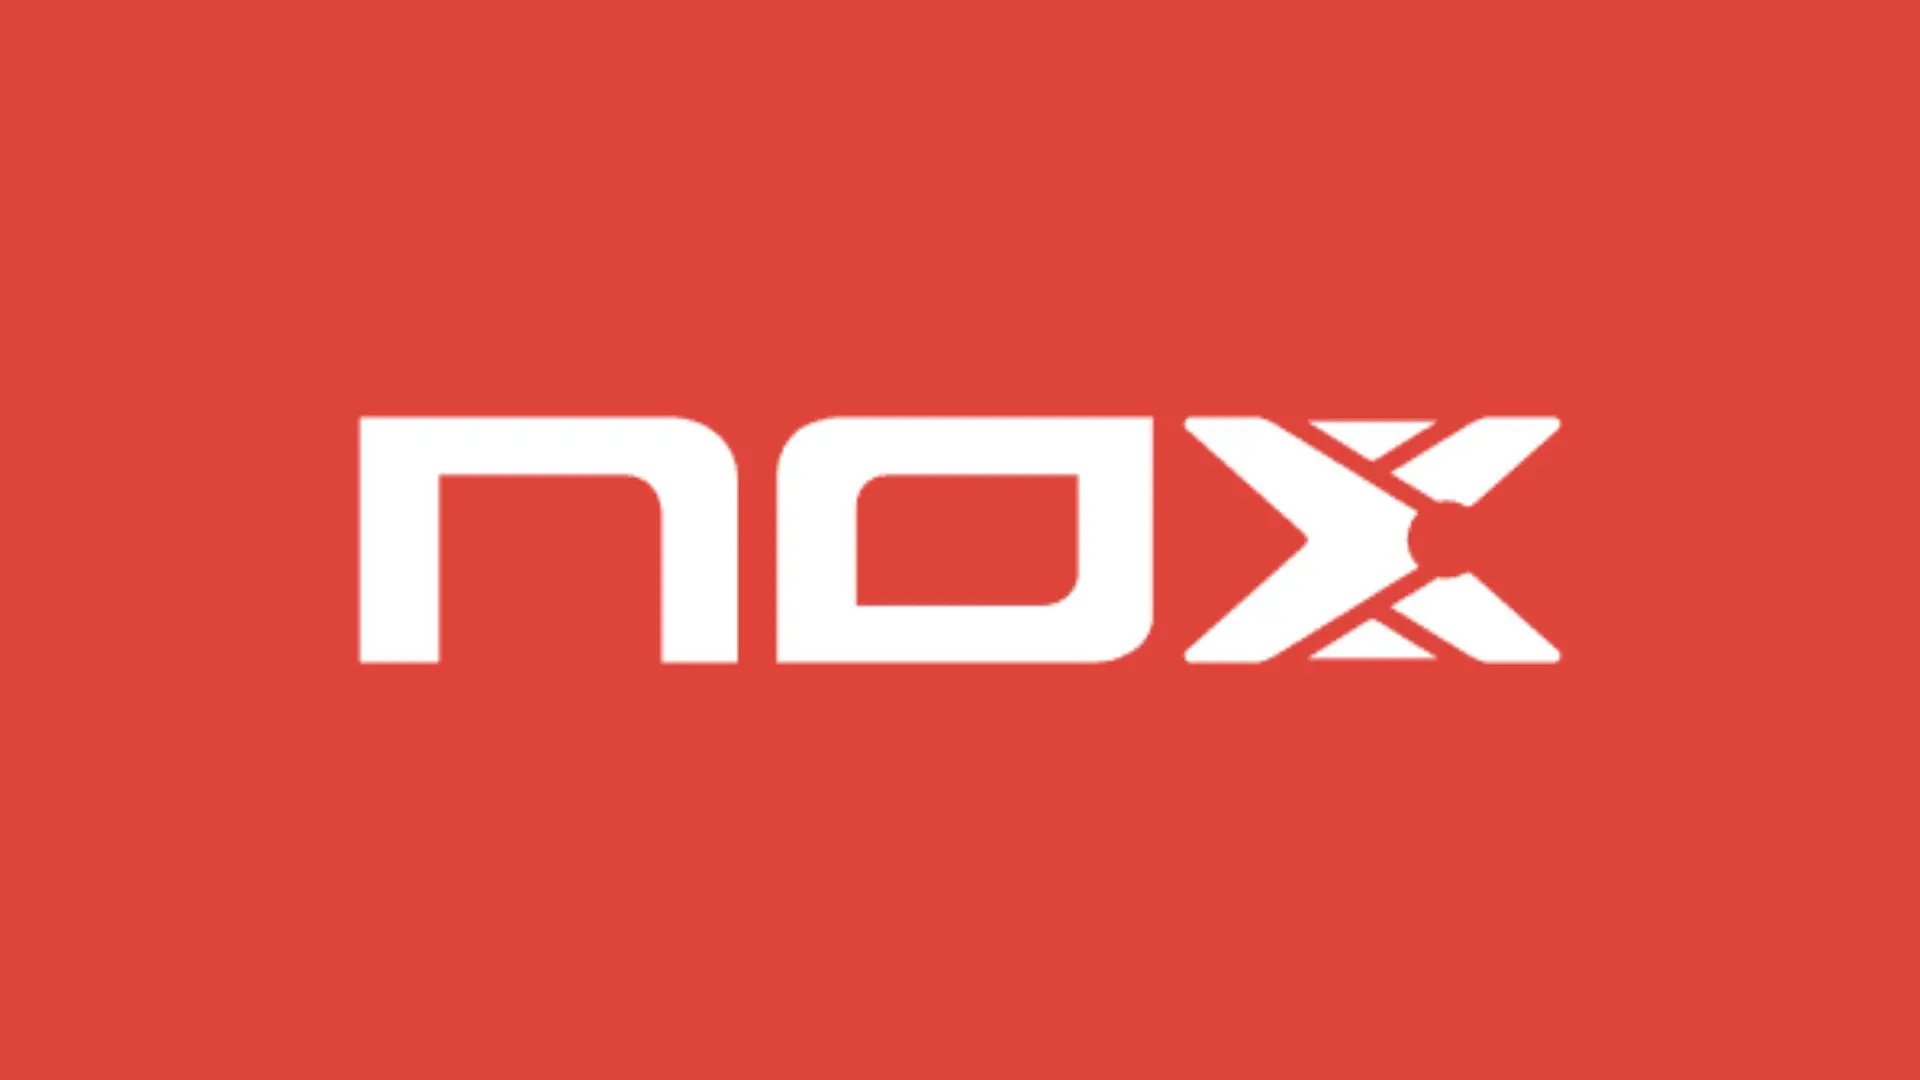 Nox padel : Welches Pala soll man je nach Temperatur verwenden?